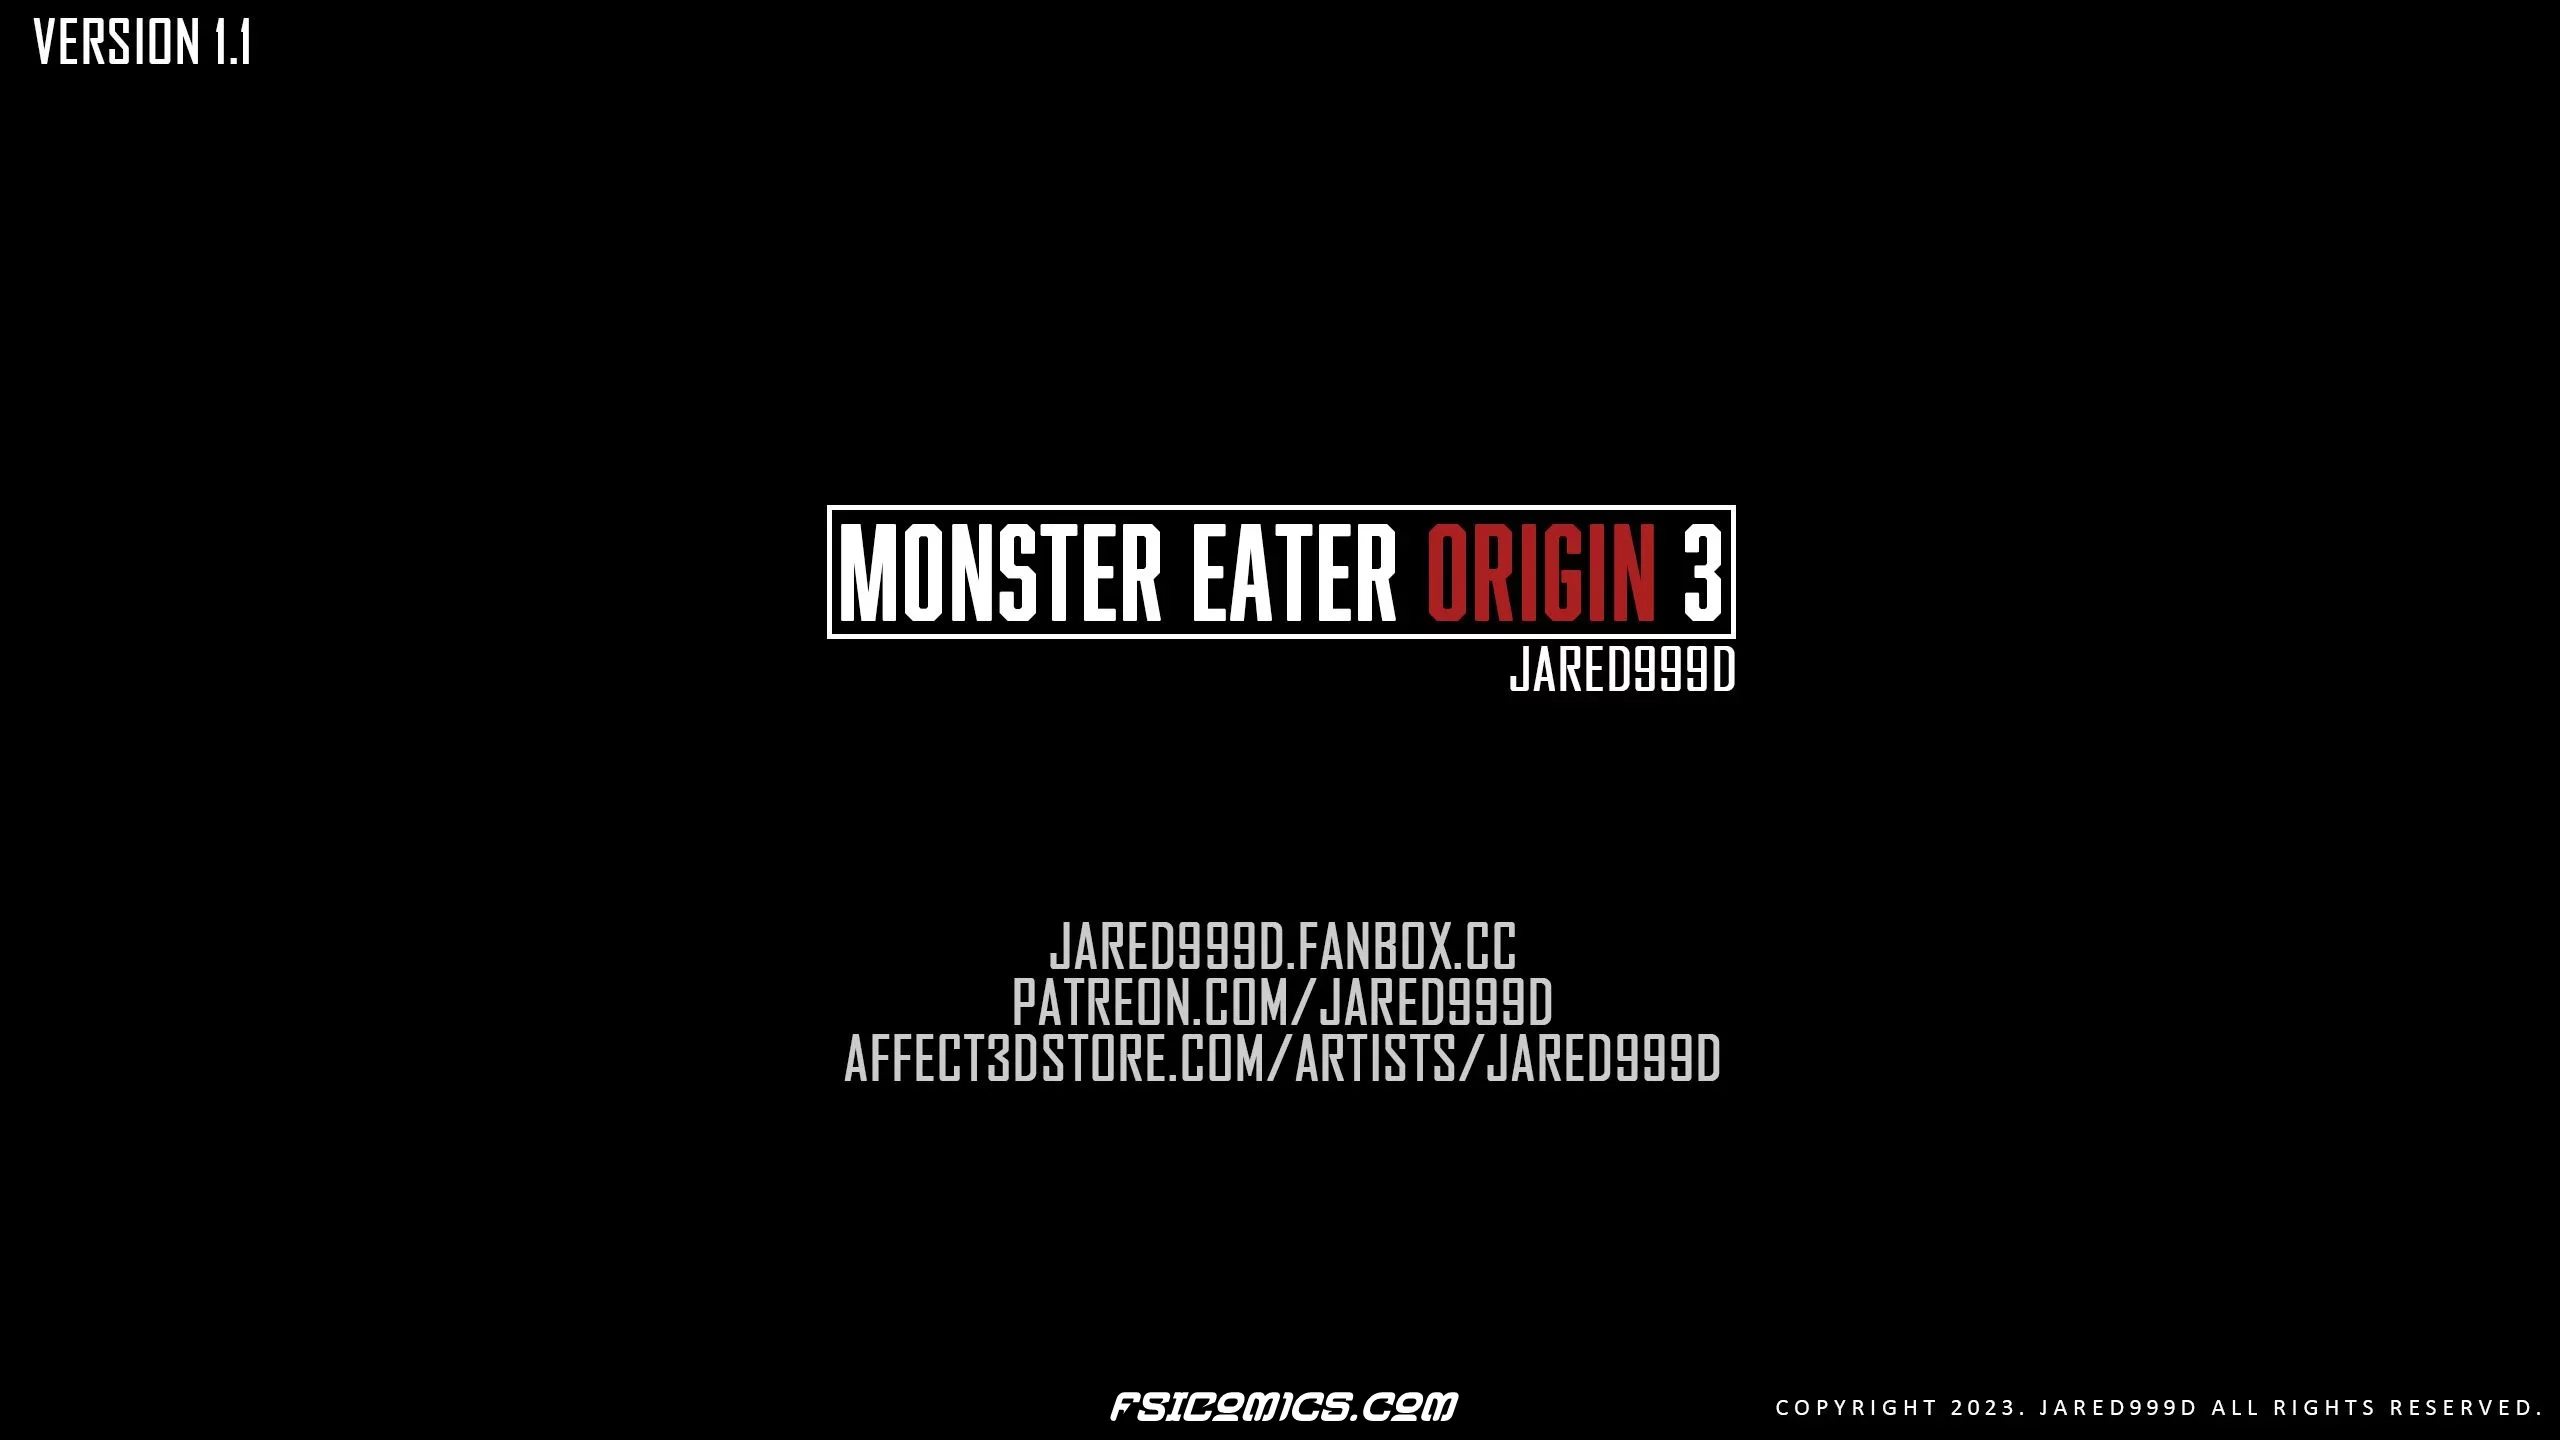 Monster Eater Origins Chapter 3 - Jared999D - 31 - FSIComics